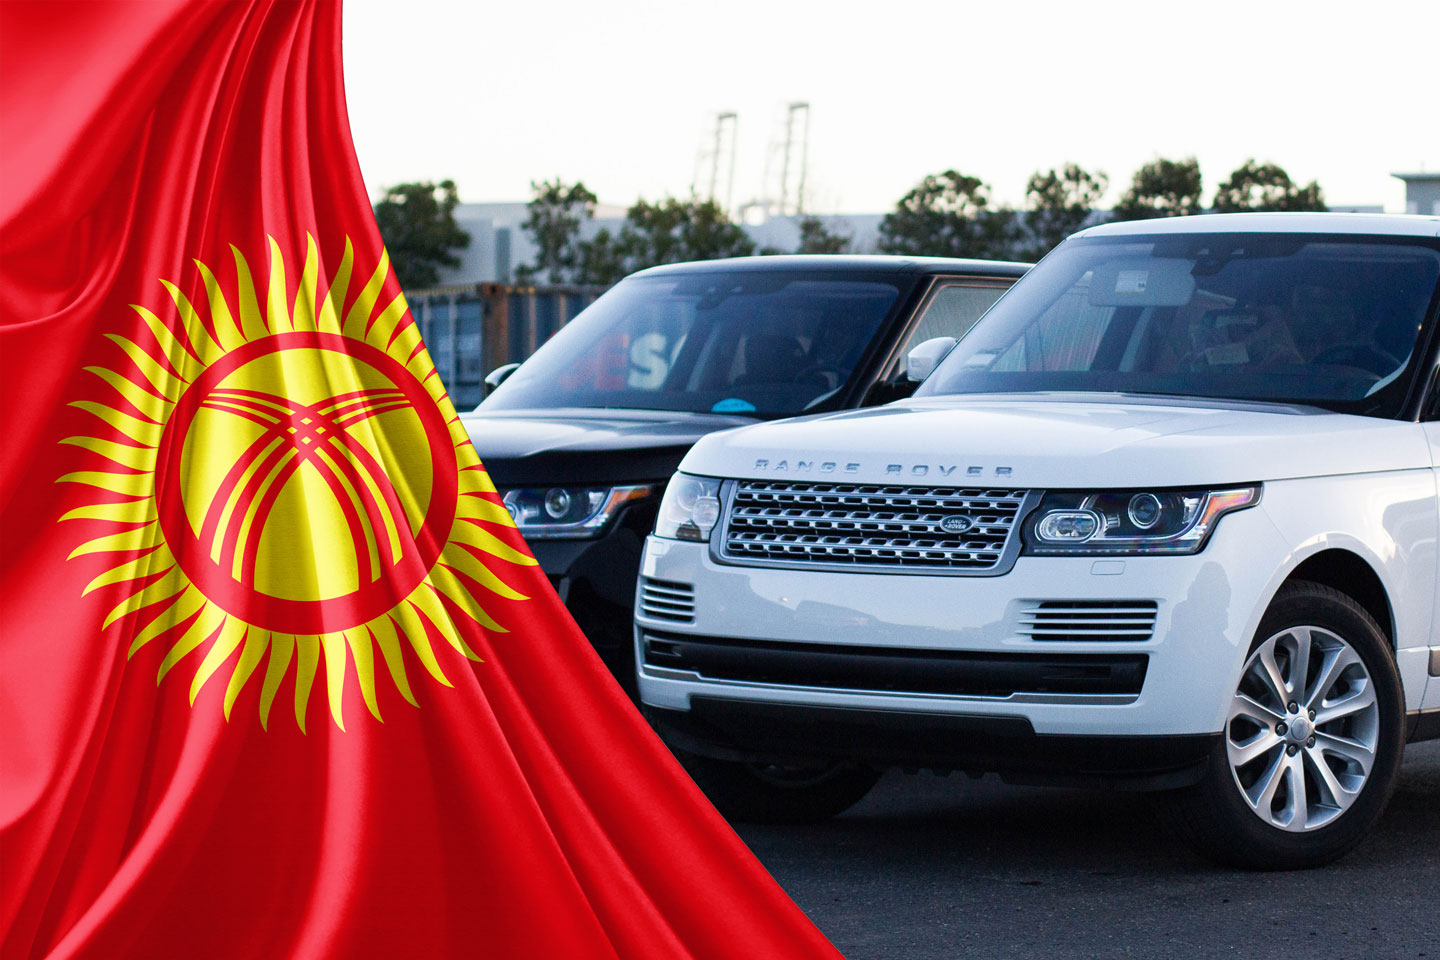 https://cdn2.hubspot.net/hubfs/347760/kyrgyzstan-car-import-range-rover.jpg